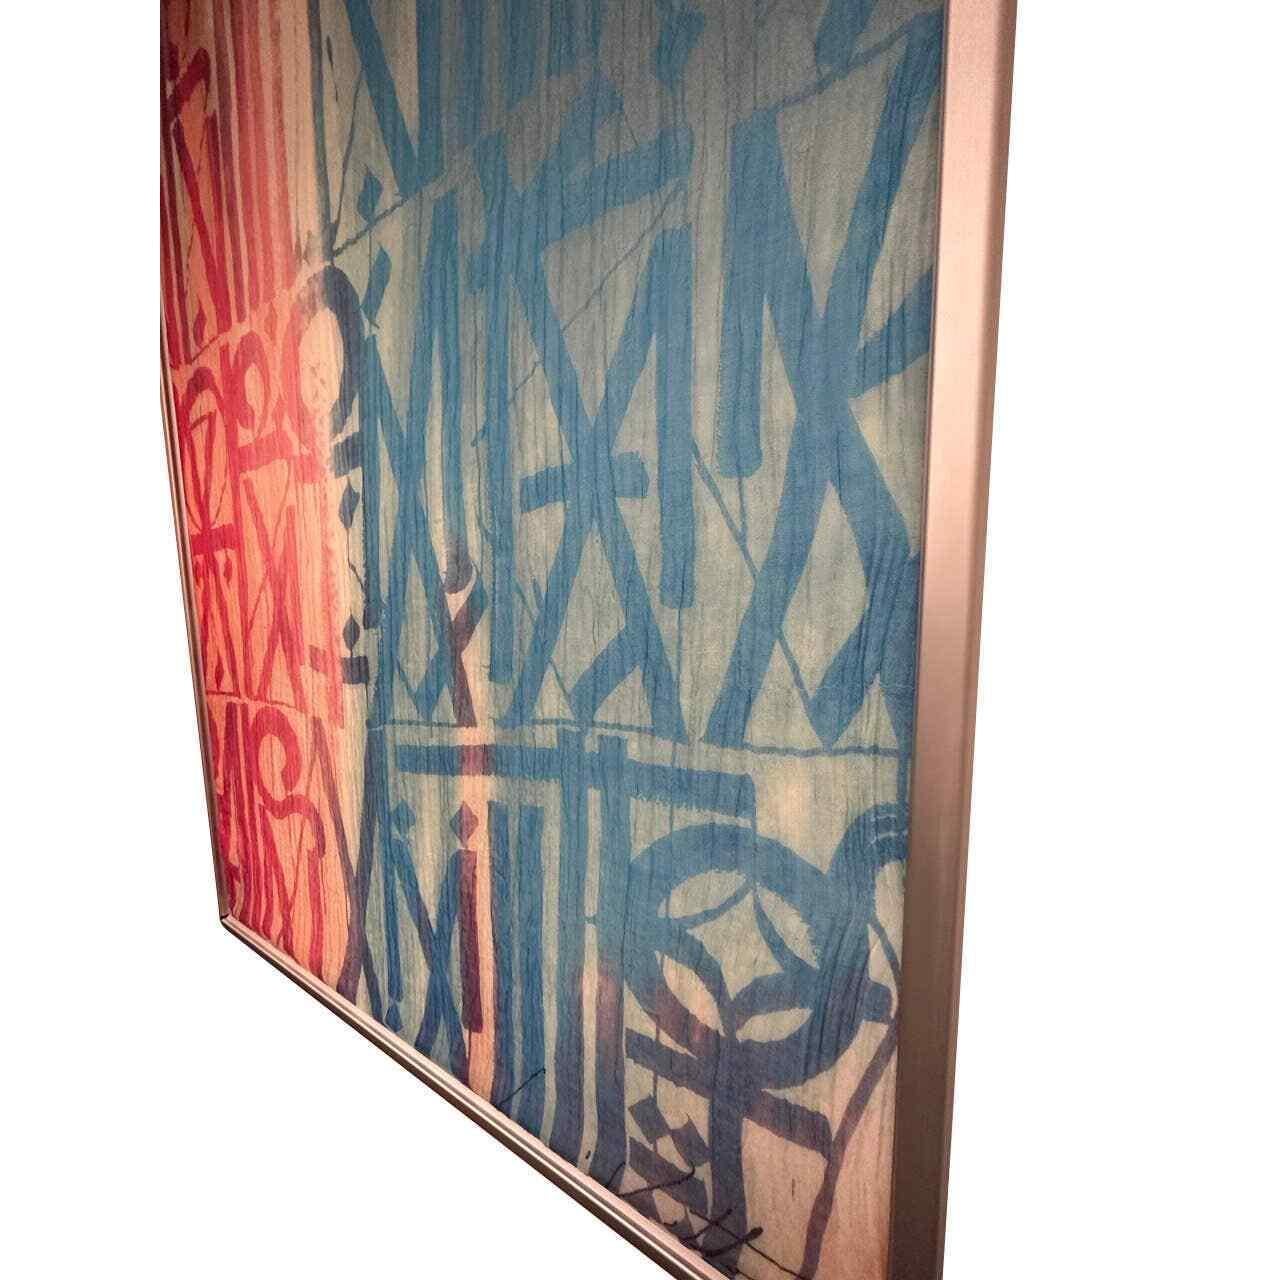 RETNA Signature X Louis Vuitton LV Graffiti Collection Piece by LA Street Art For Sale 2